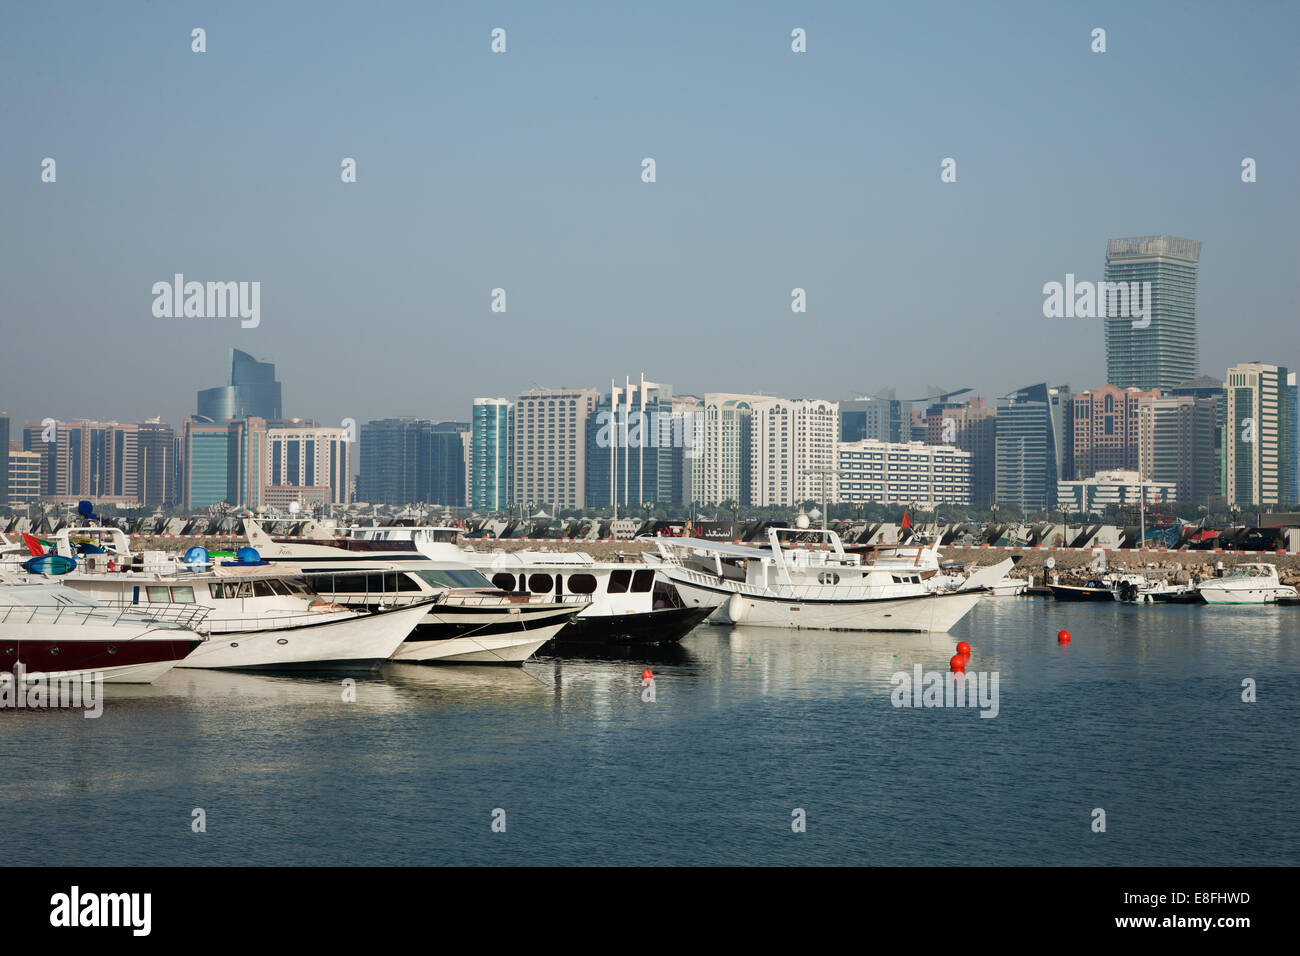 Harbor and city skyline, Abu Dhabi, United Arab Emirates Stock Photo